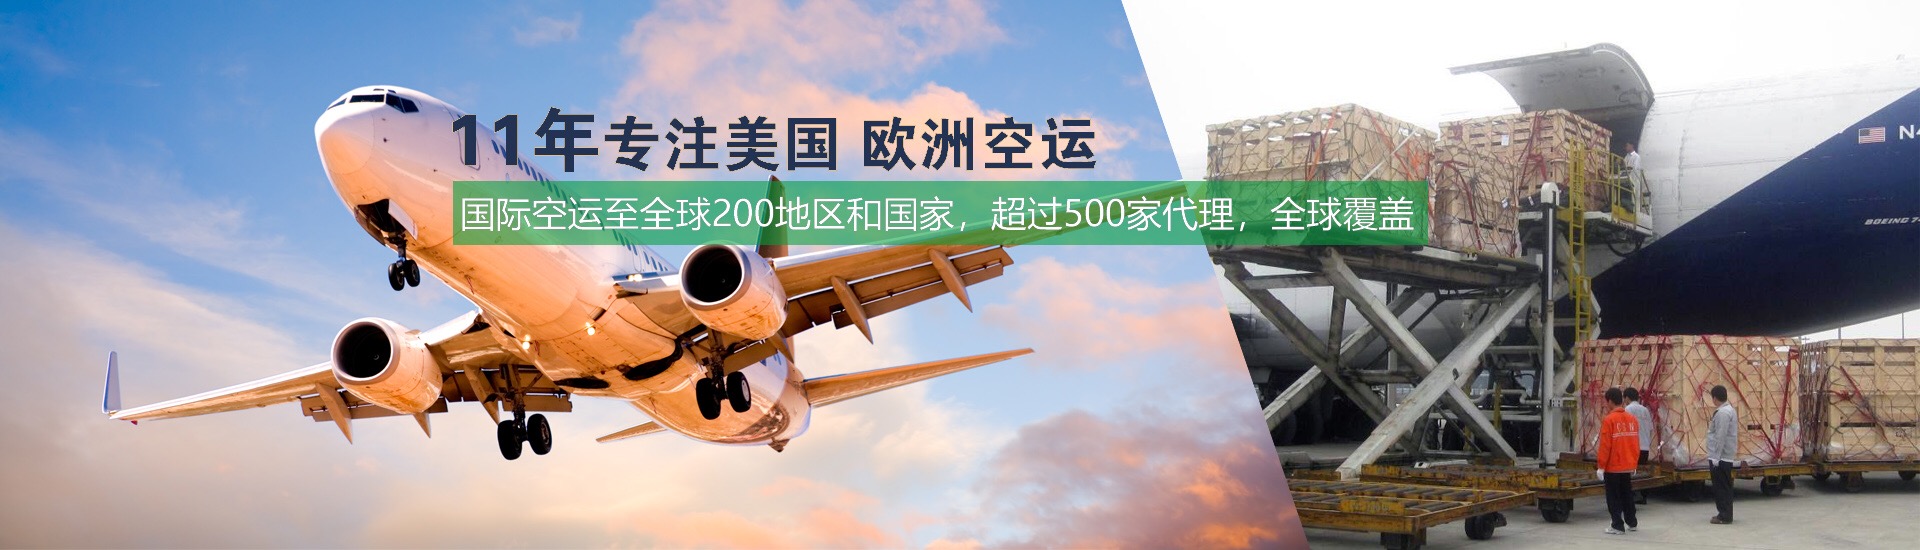 2019年1月国际空运,e-AWB将成为航空货运标准